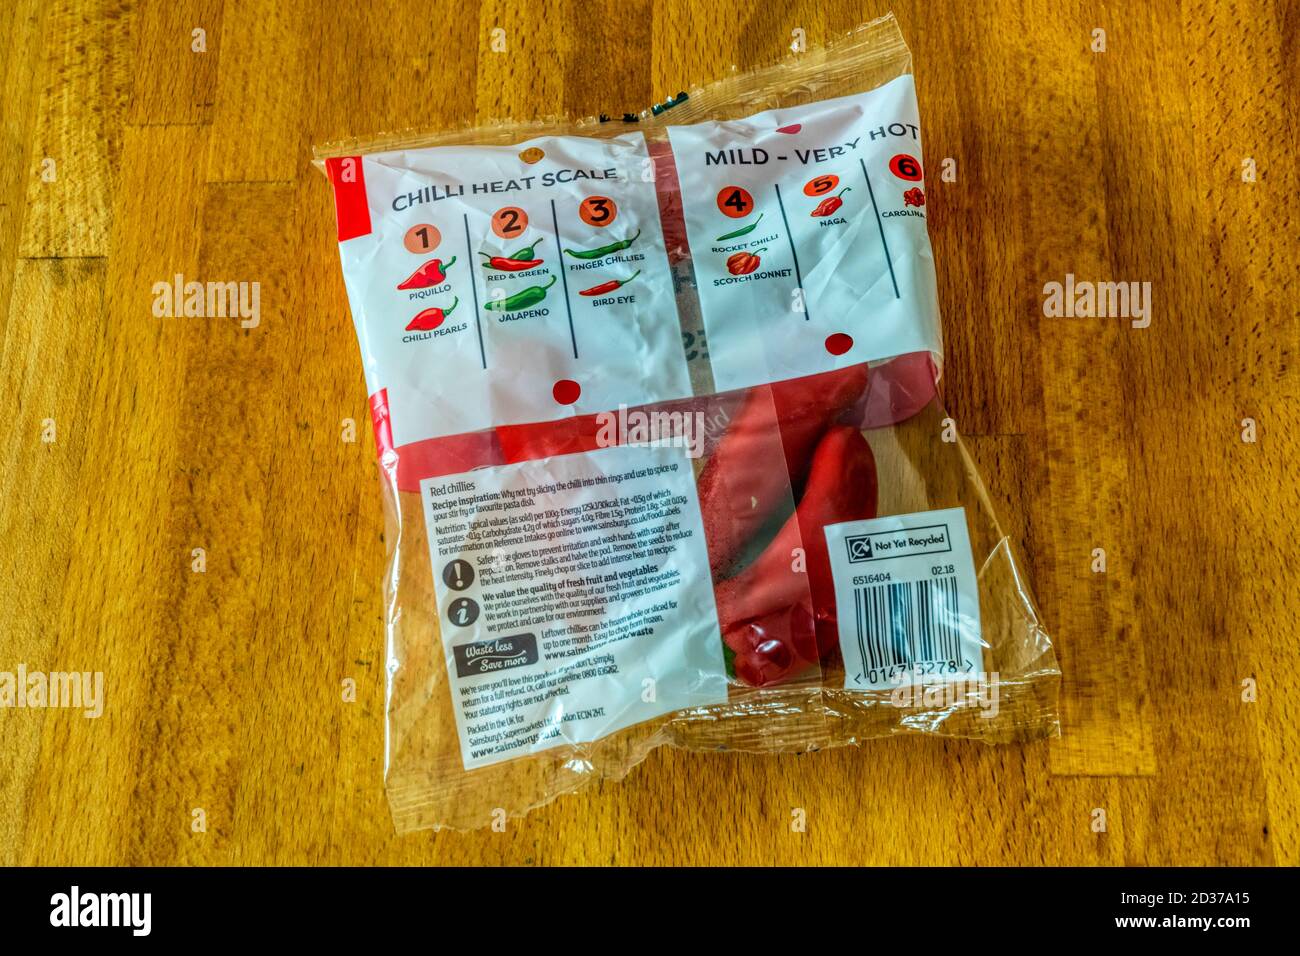 Chilischeiskala auf einem Päckchen roter Chilischoten, die im Supermarkt gekauft wurden. Stockfoto